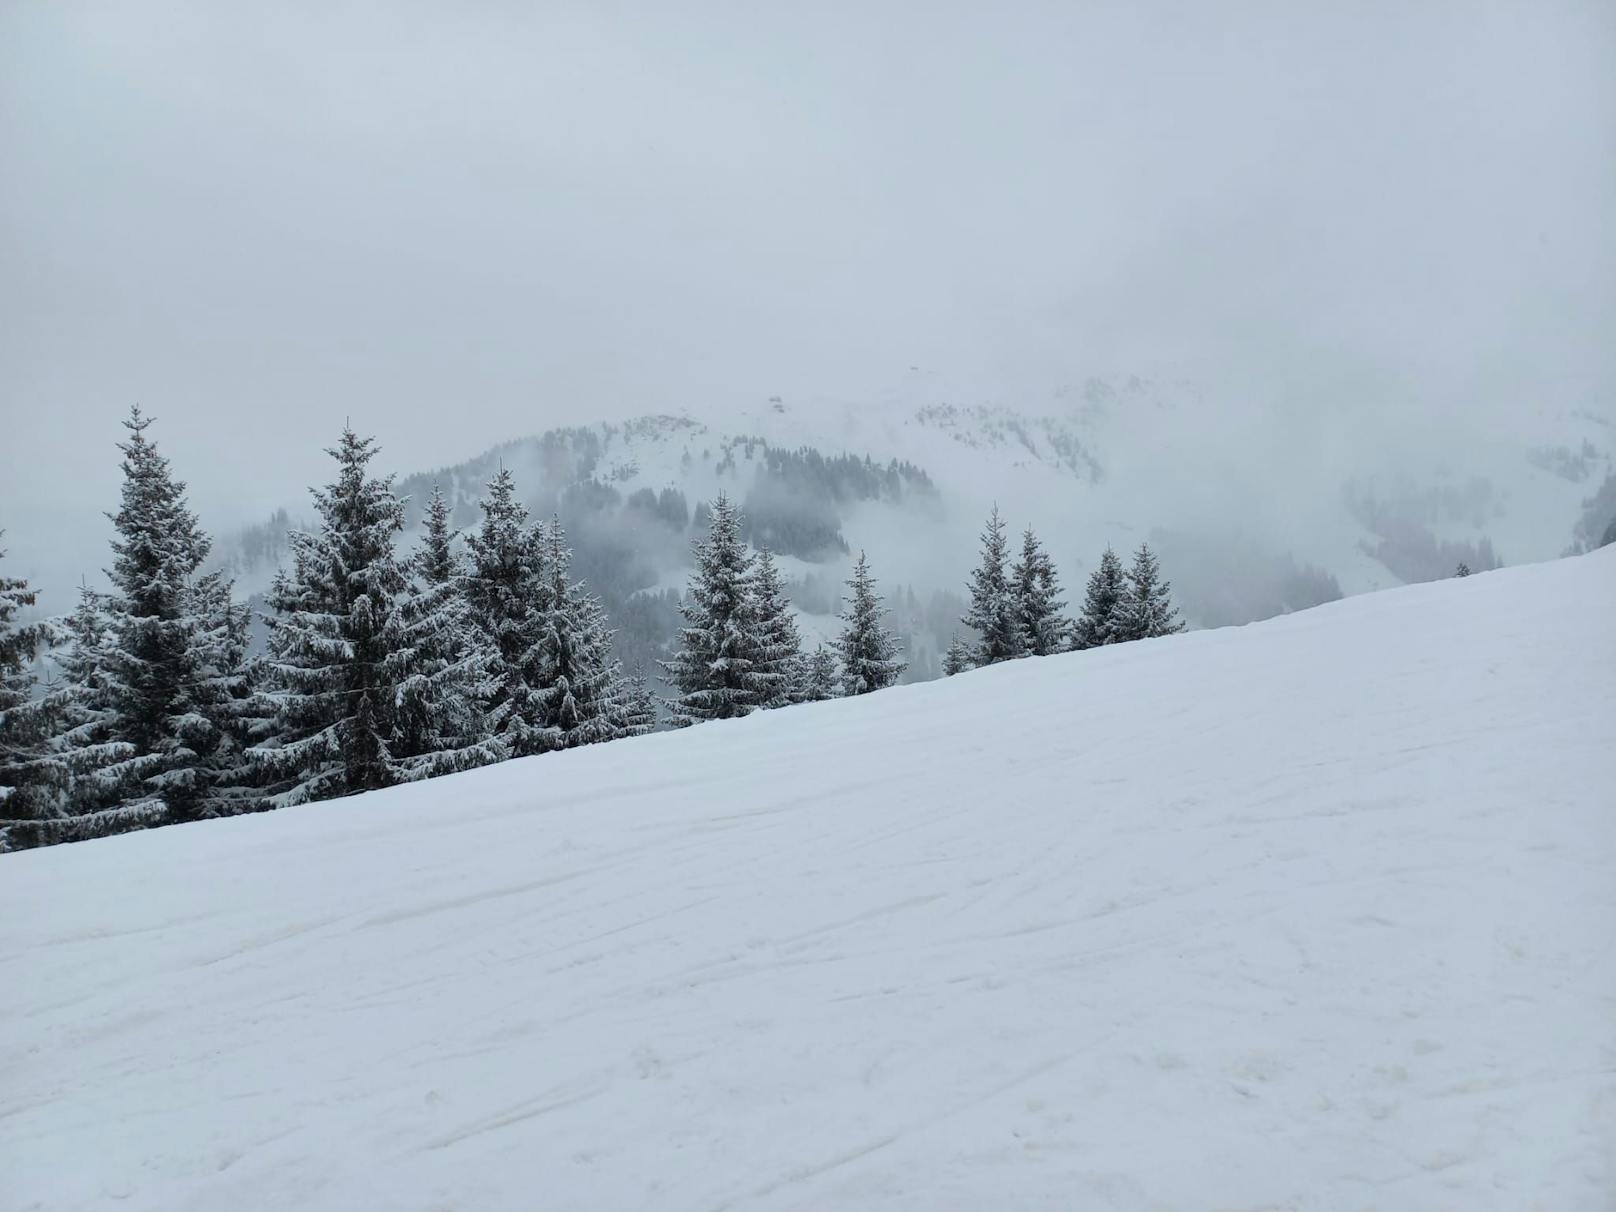 Endlich Winter-Feeling in Kitzbühel! Zwei Tage vor den Hahnenkammrennen zuckert eine Neuschnee-Schicht die bis dahin grüne Gamsstadt an.